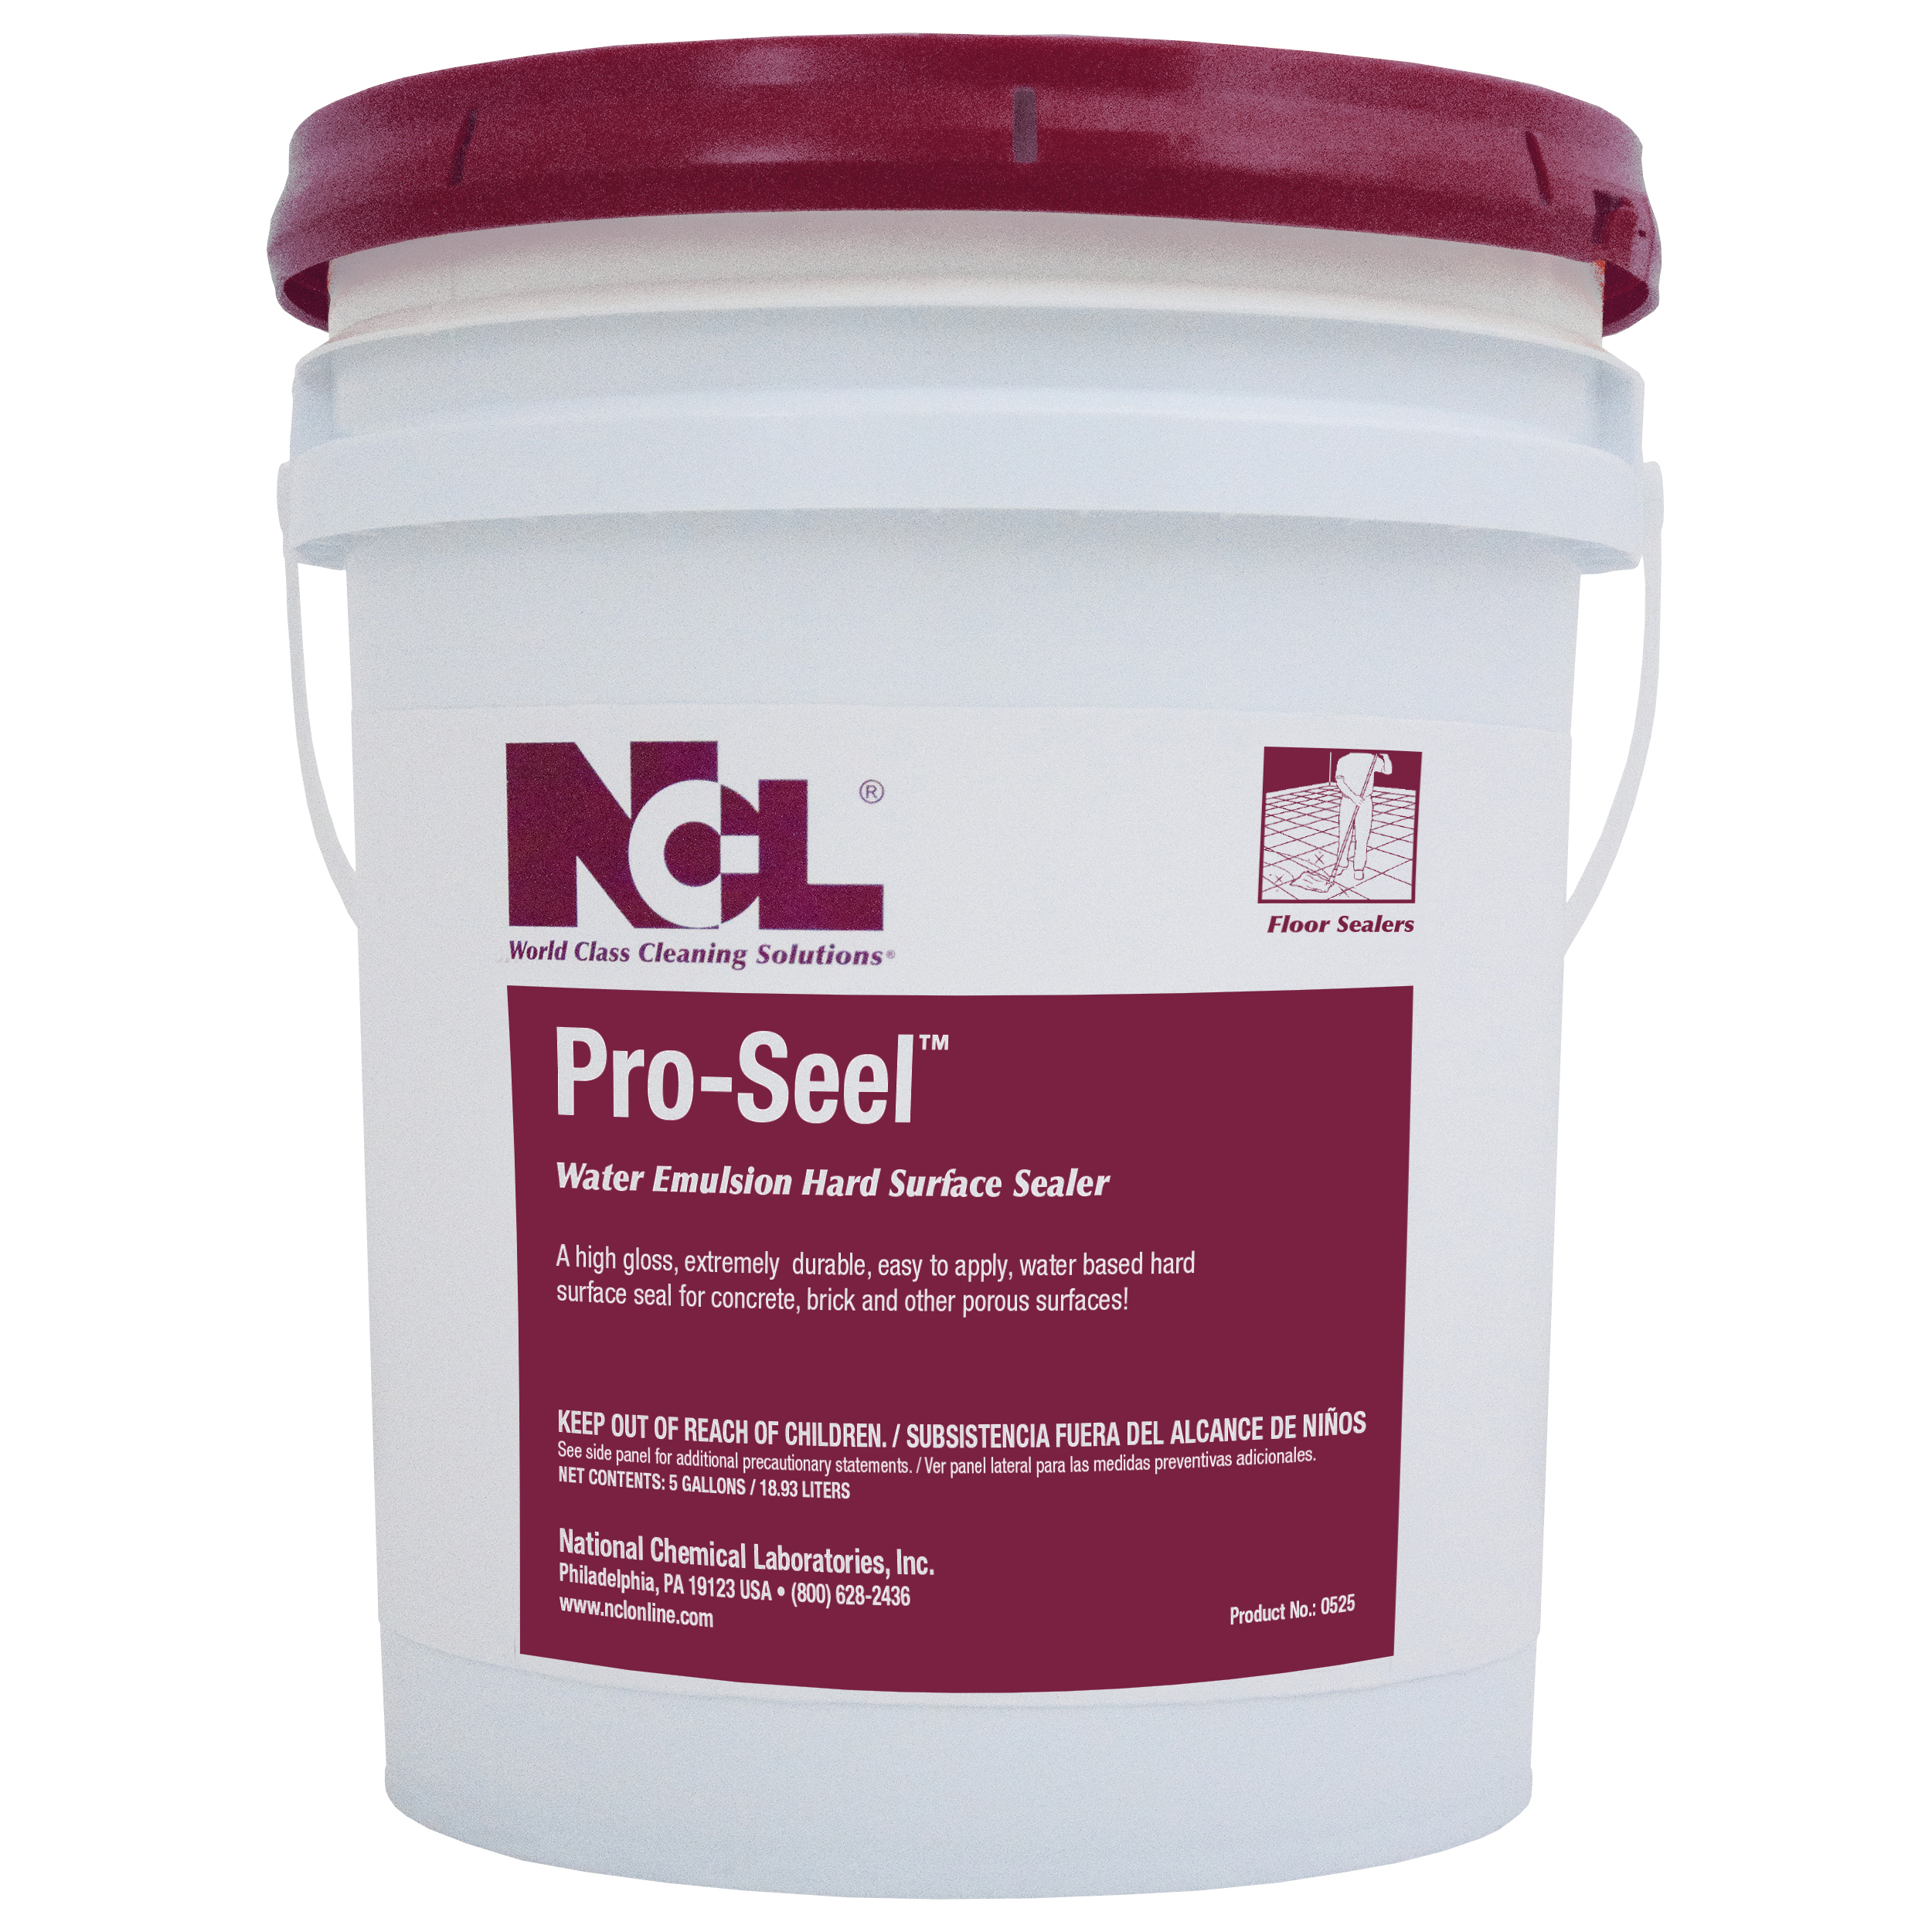  PRO-SEEL Water Emulsion Hard Surface Sealer 5 Gal. Pail (NCL0525-21) 